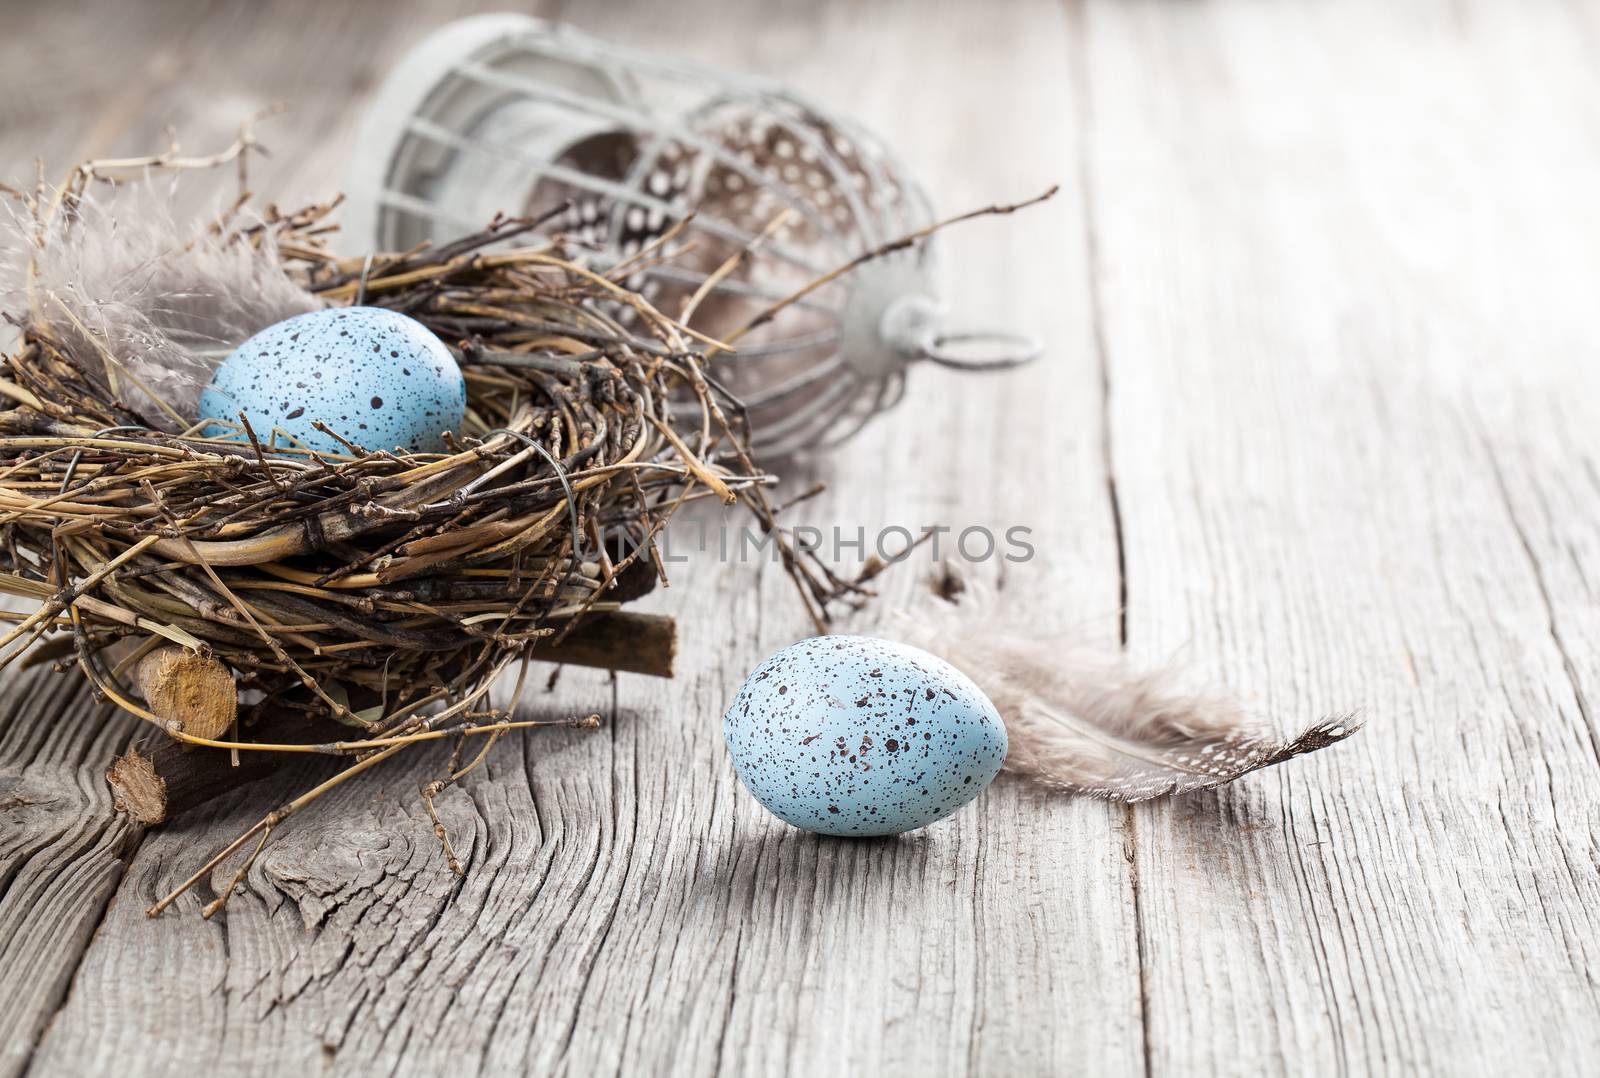 quail eggs on white wooden background by motorolka